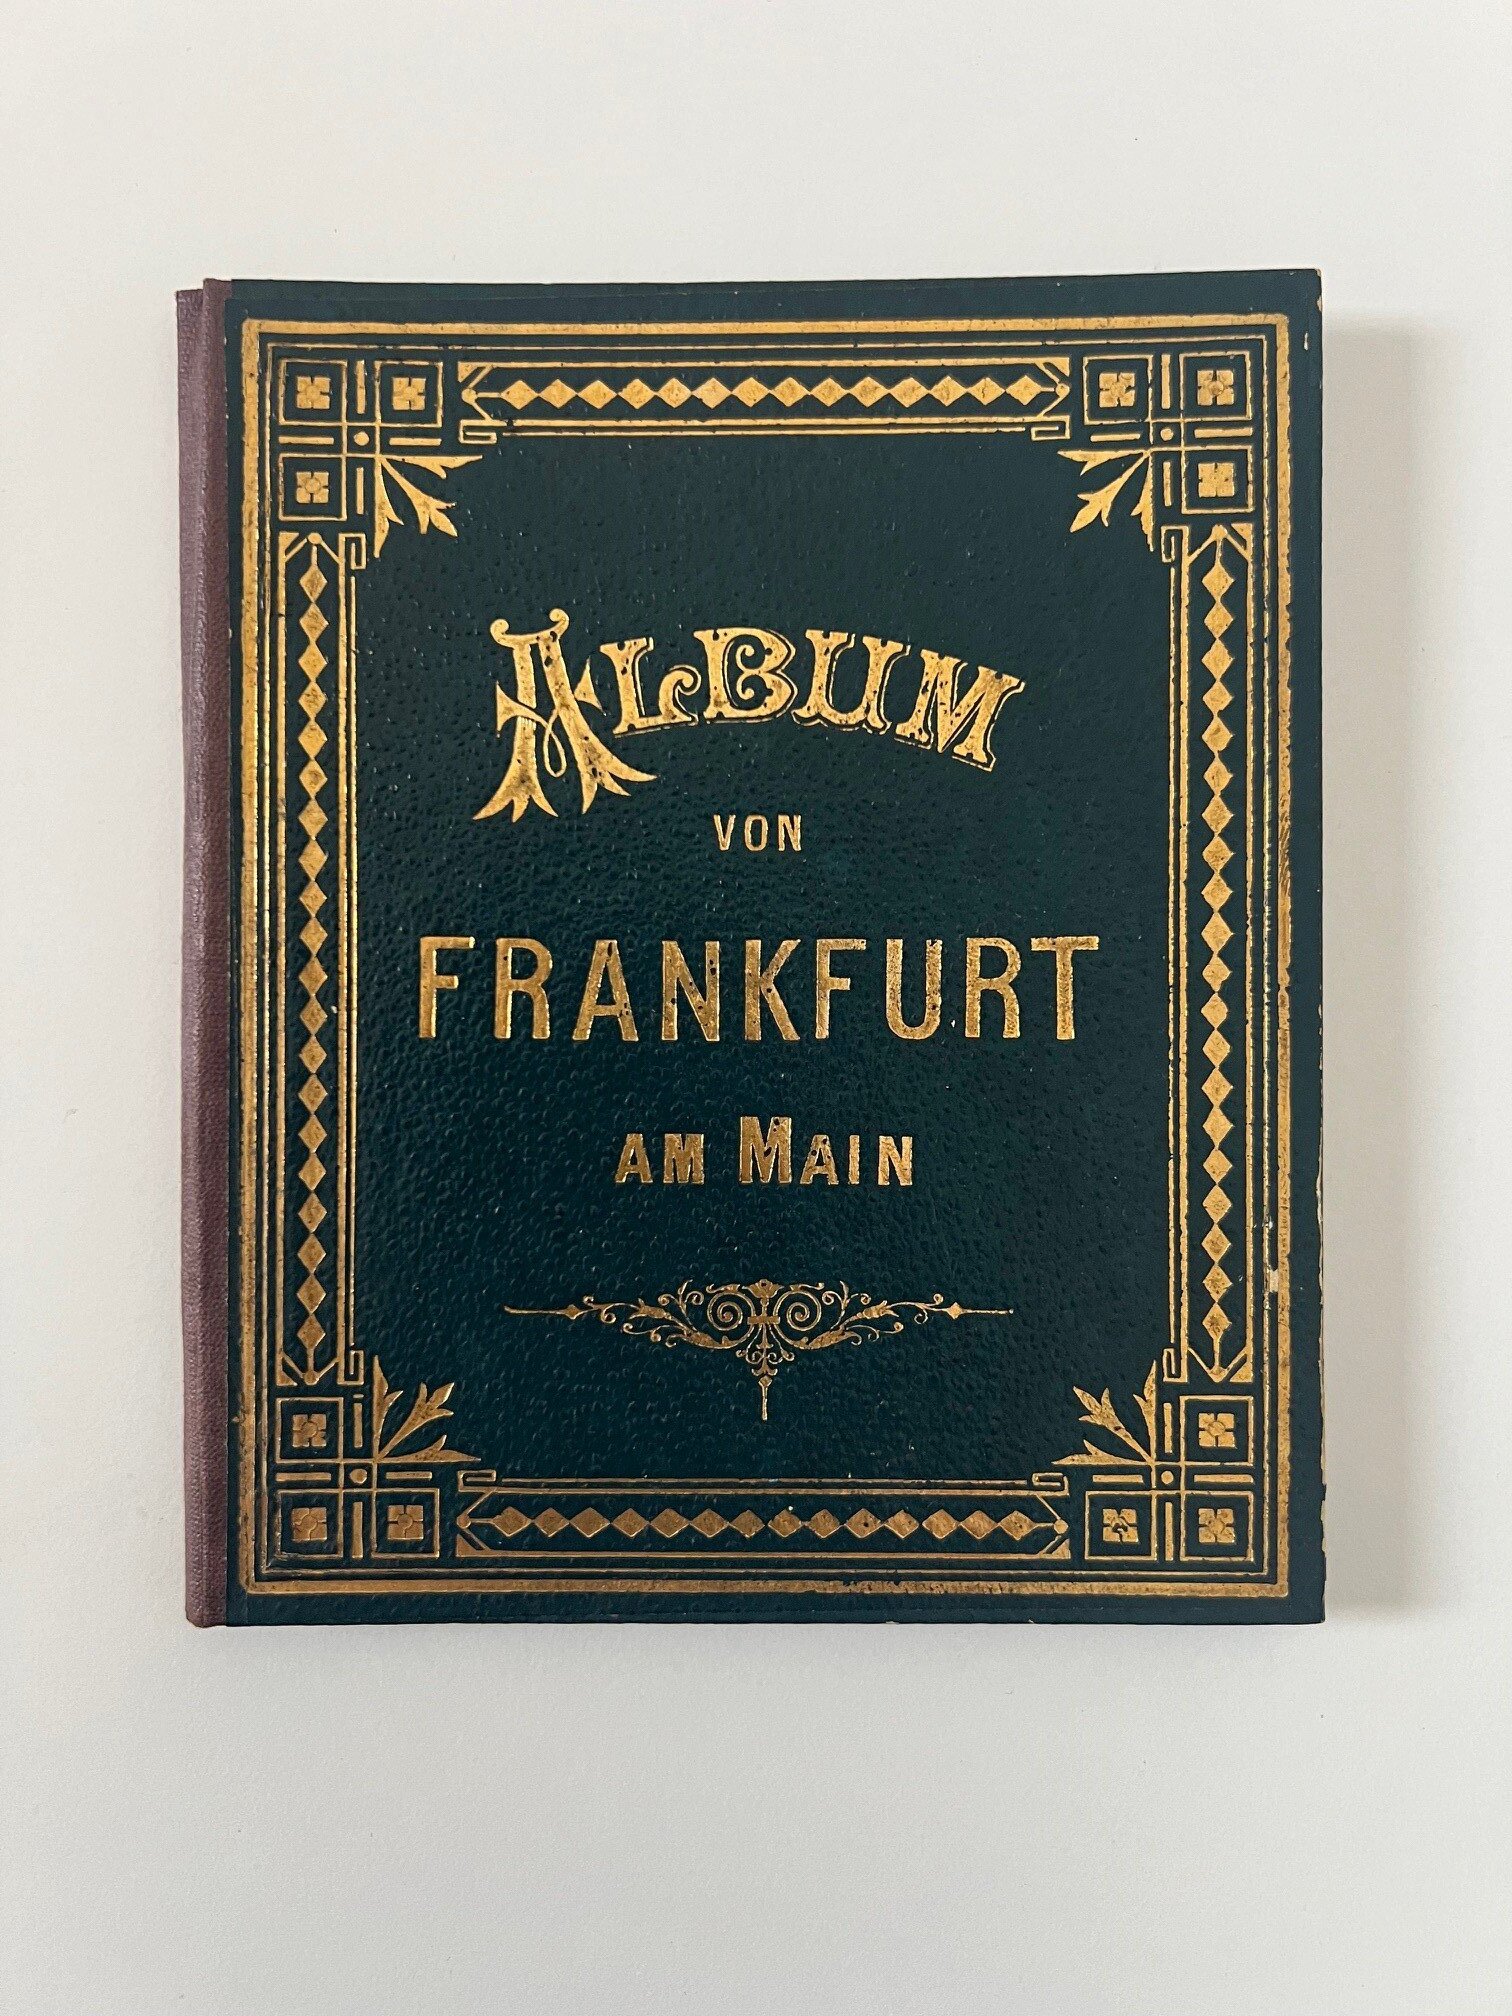 Unbekannter Hersteller, Album von Frankfurt am Main, 25 Lithographien als Leporello, ca. 1887. (Taunus-Rhein-Main - Regionalgeschichtliche Sammlung Dr. Stefan Naas CC BY-NC-SA)